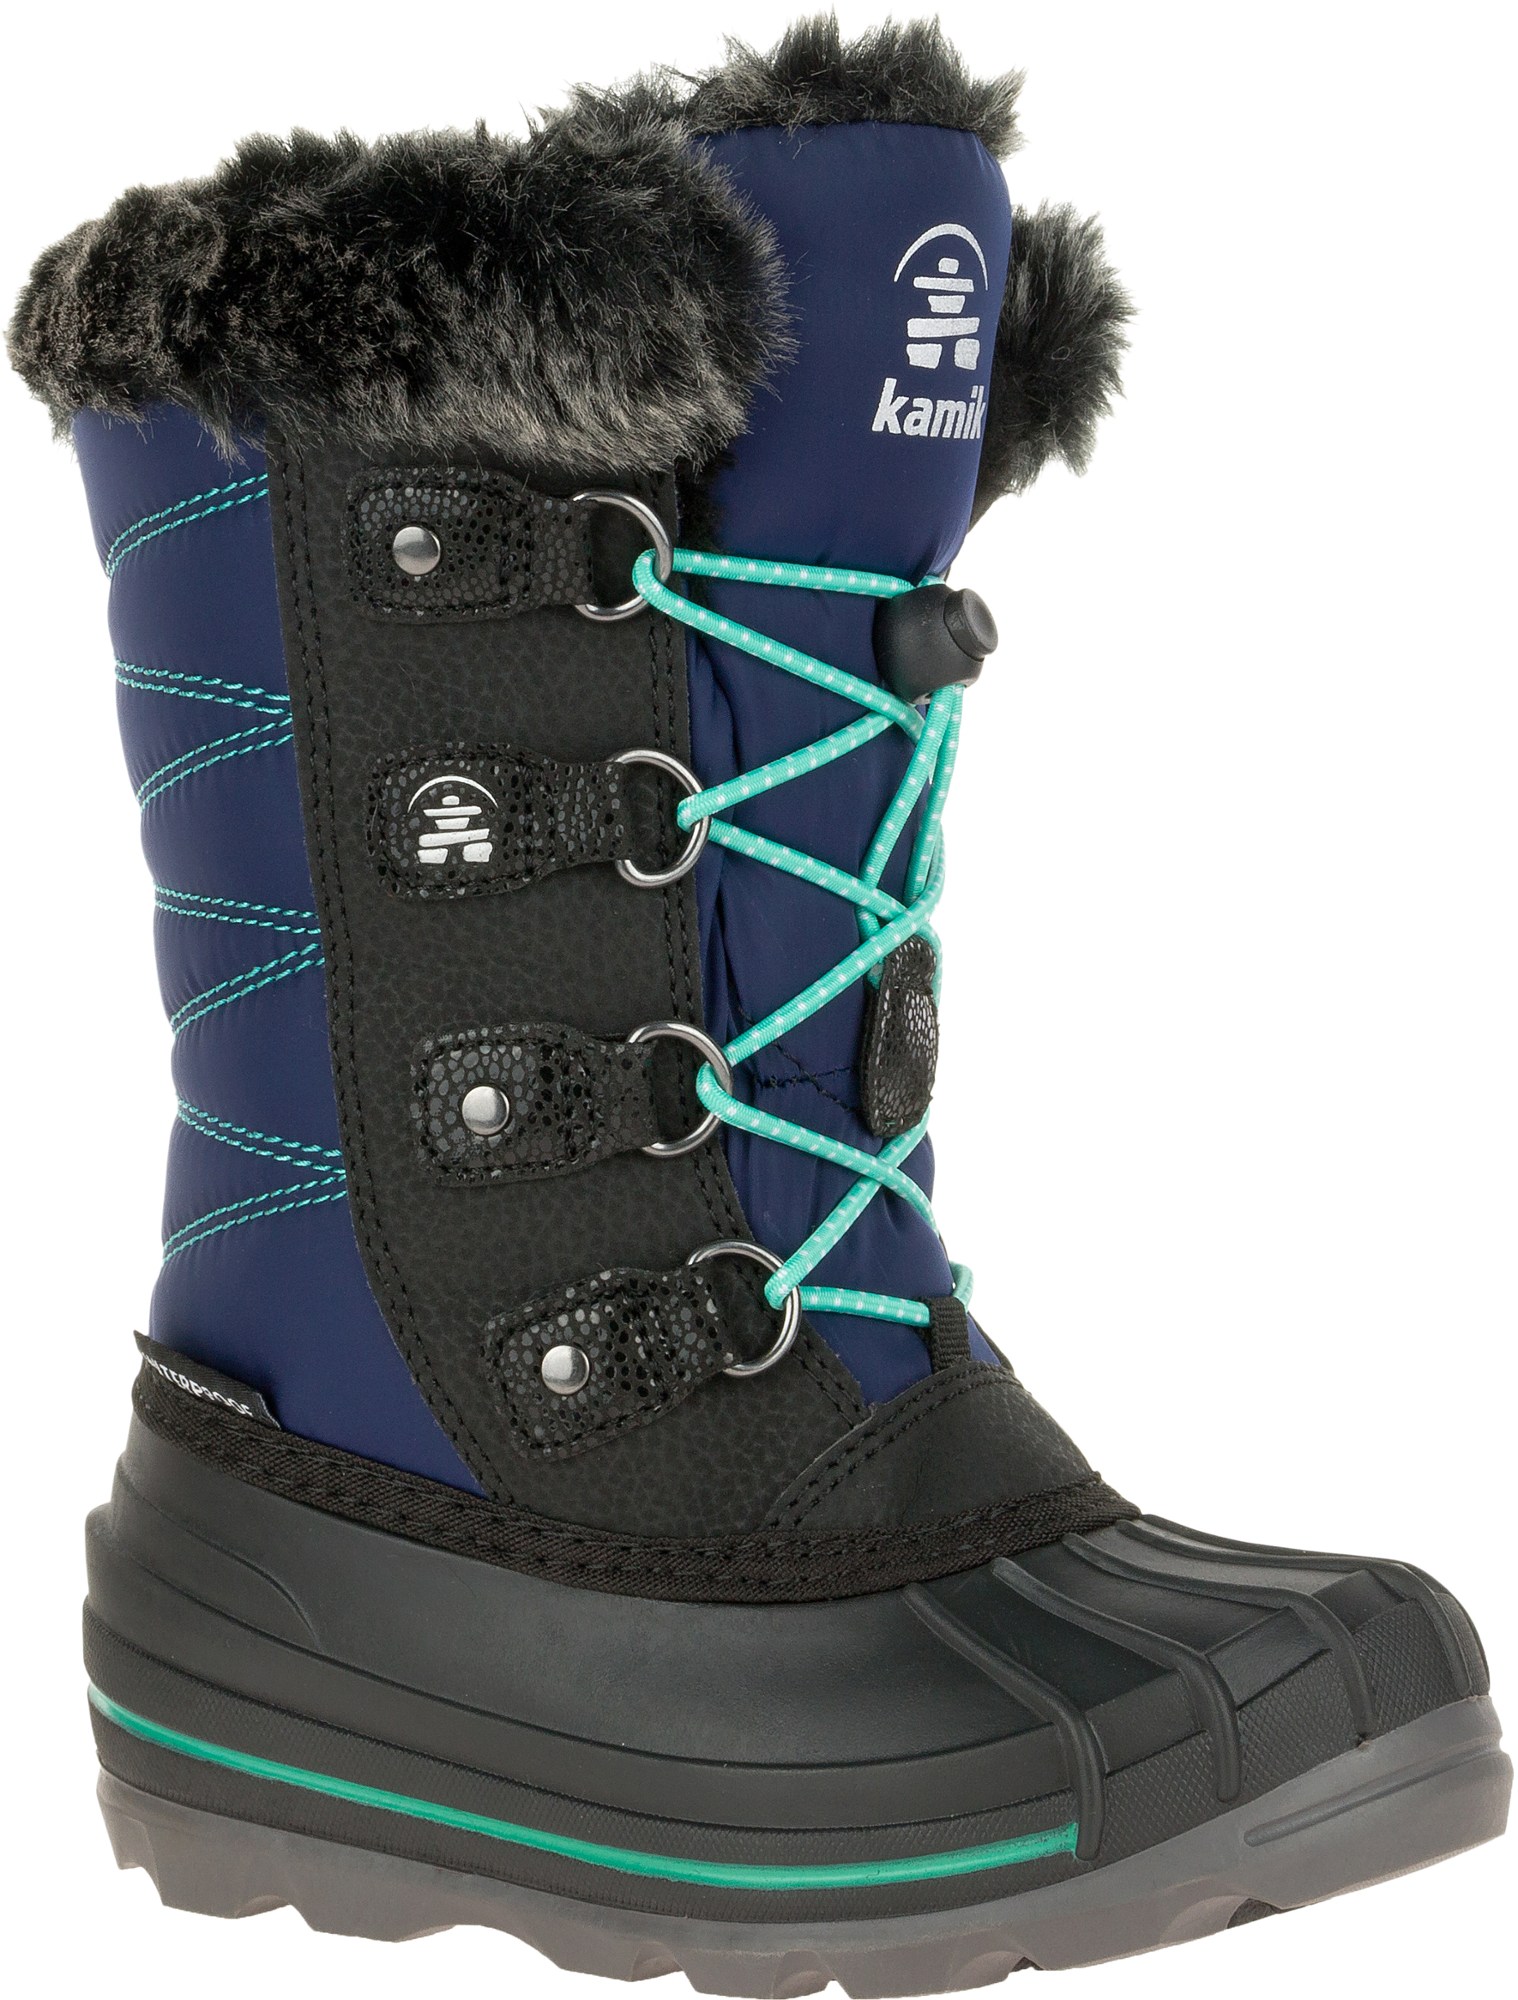 Зимние ботинки Frostylake — детские Kamik, синий детская обувь для санного спорта kamik фиолетовый